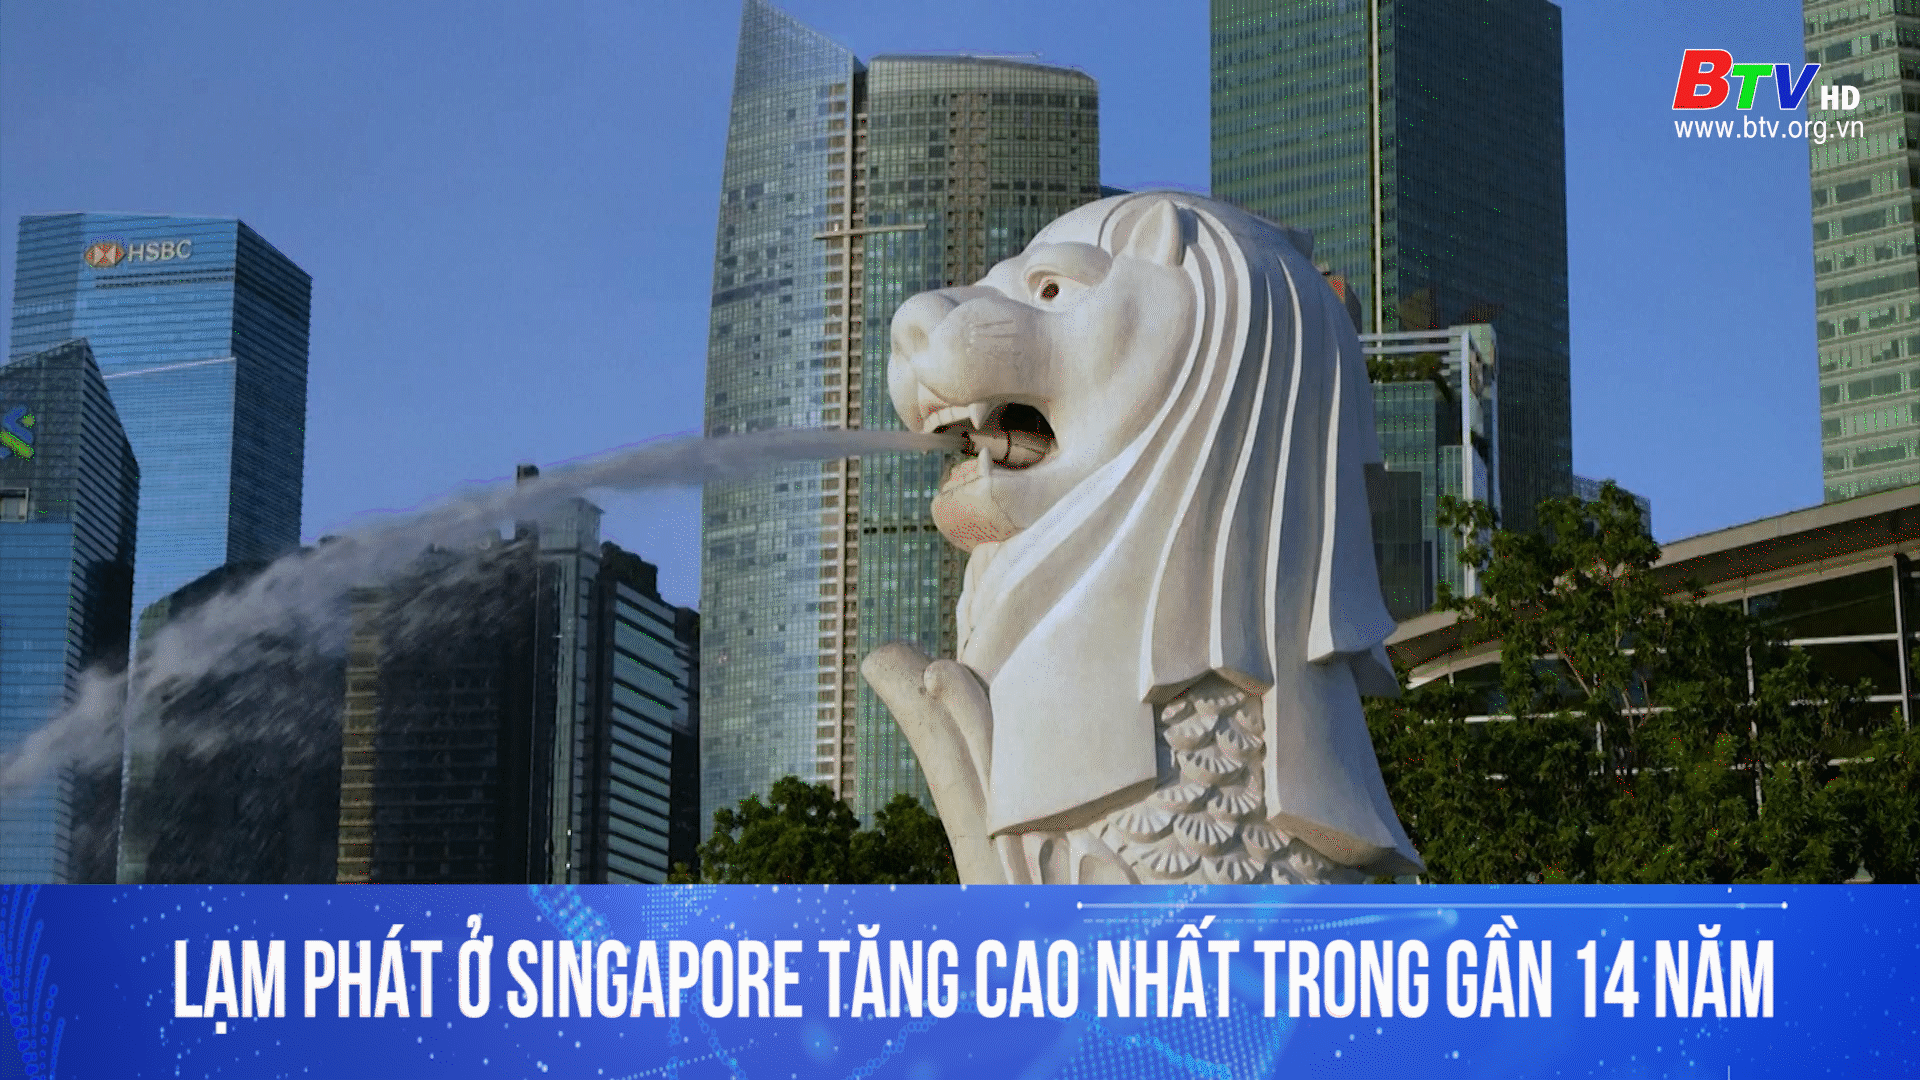 Lạm phát ở Singapore tăng cao nhất trong gần 14 năm